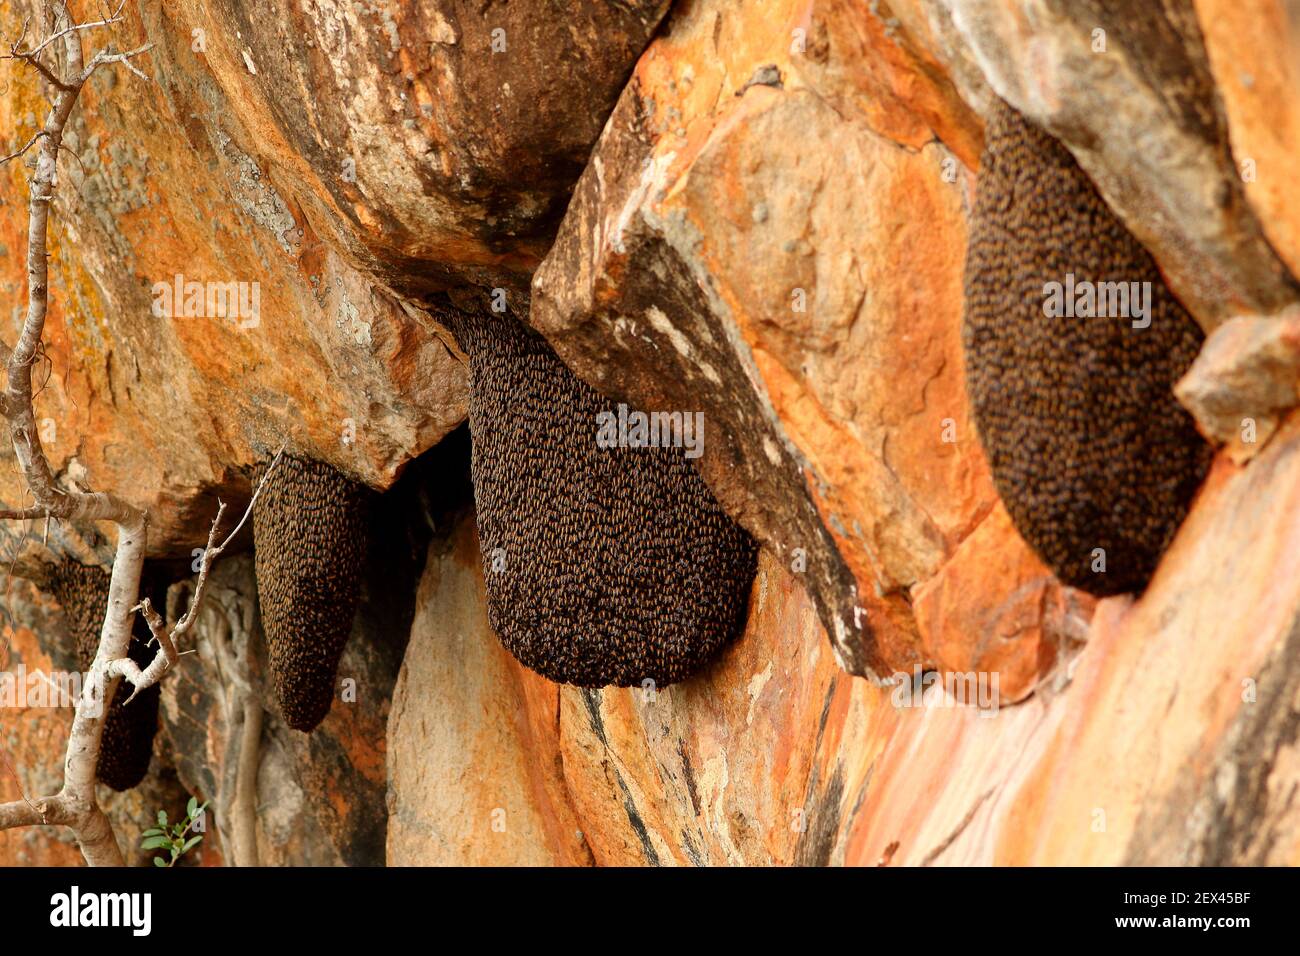 Abeille orientale (APIS cerana) nid d'abeilles suspendu d'une falaise, Sri Lanka Banque D'Images